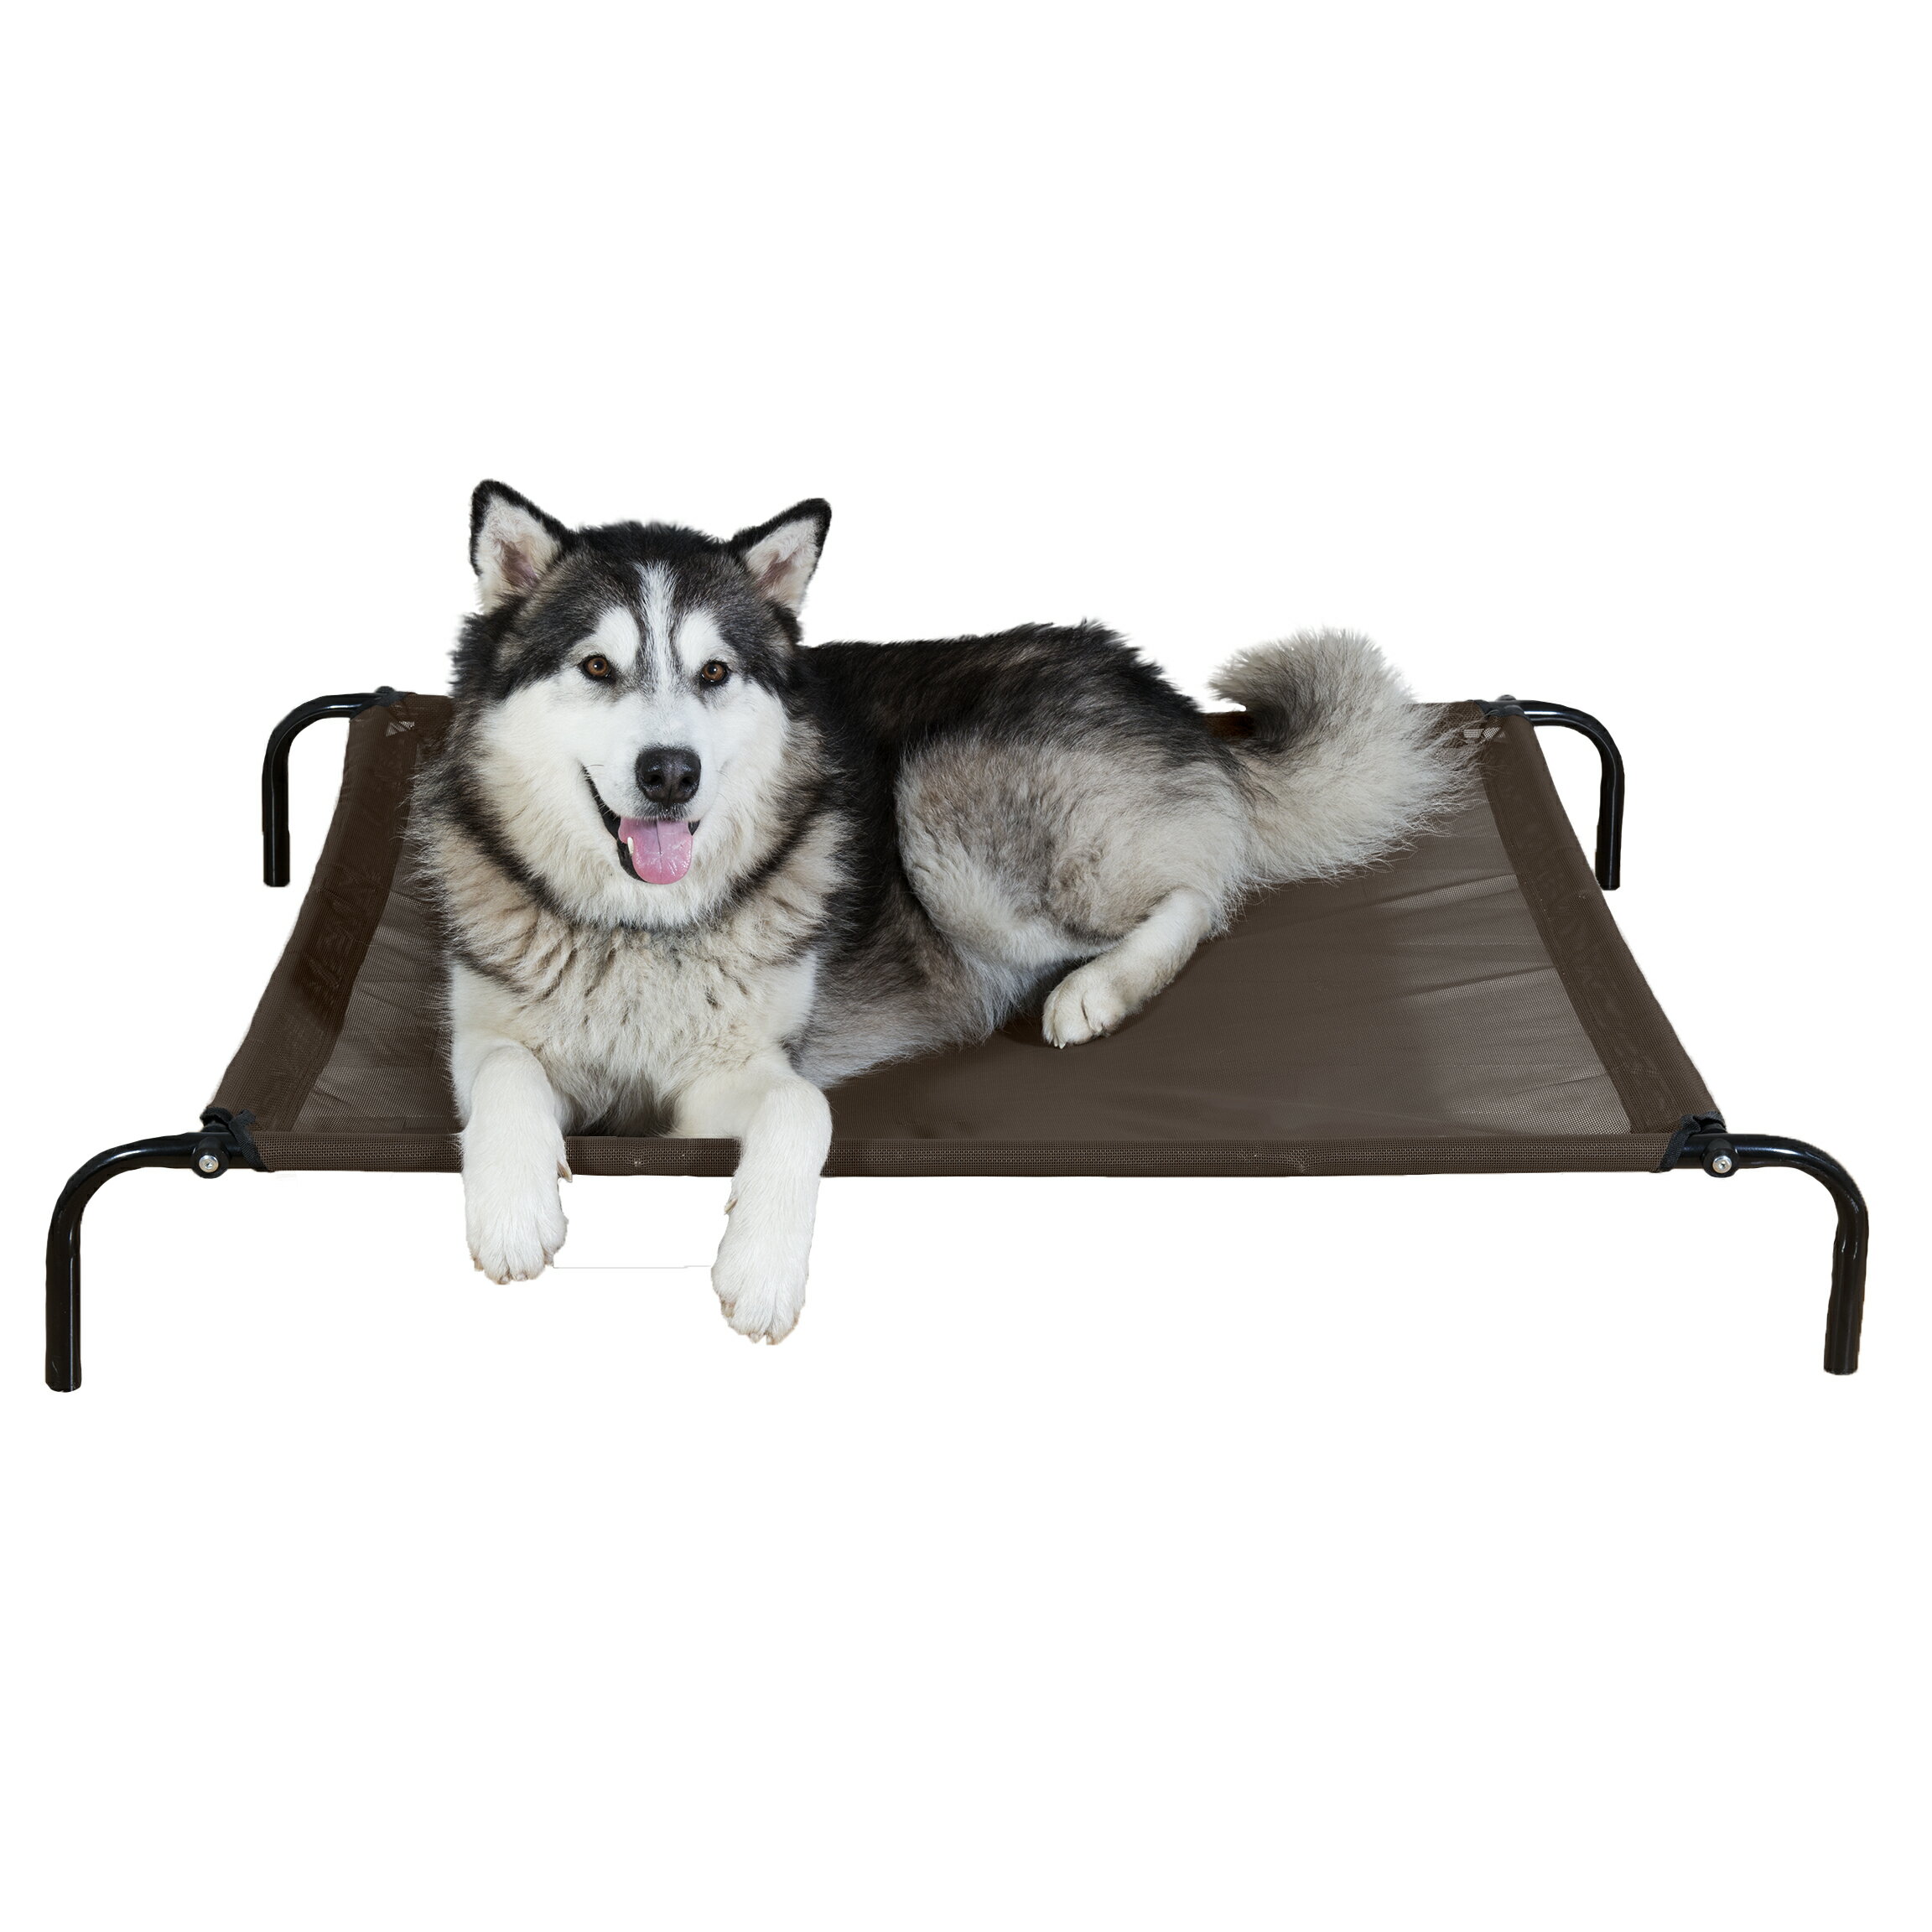 Лежак для собаки elevated Dog